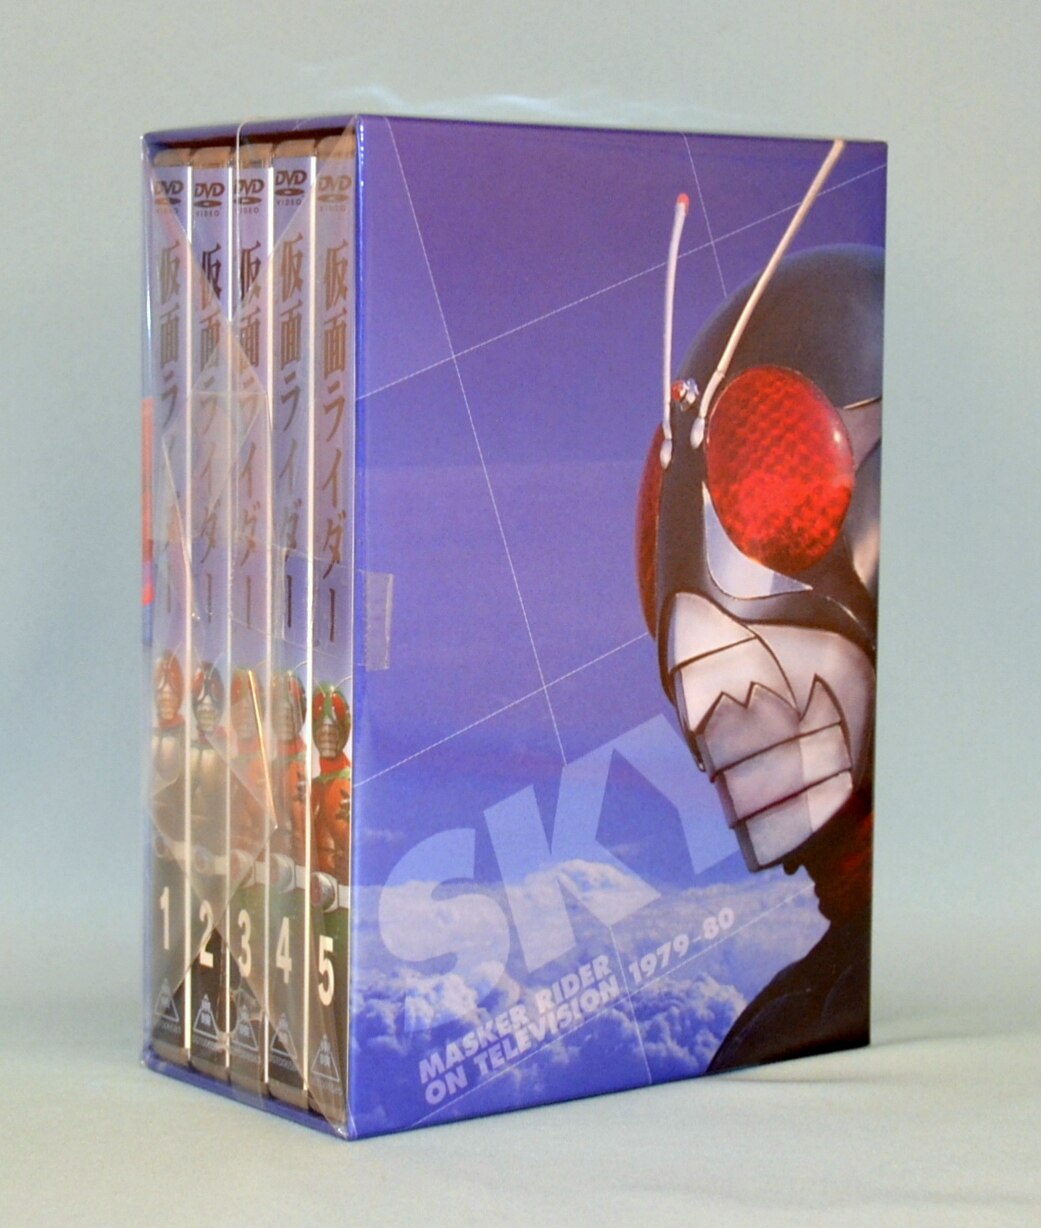 特撮DVD 初回)仮面ライダー(スカイライダー) BOX付全5巻 セット